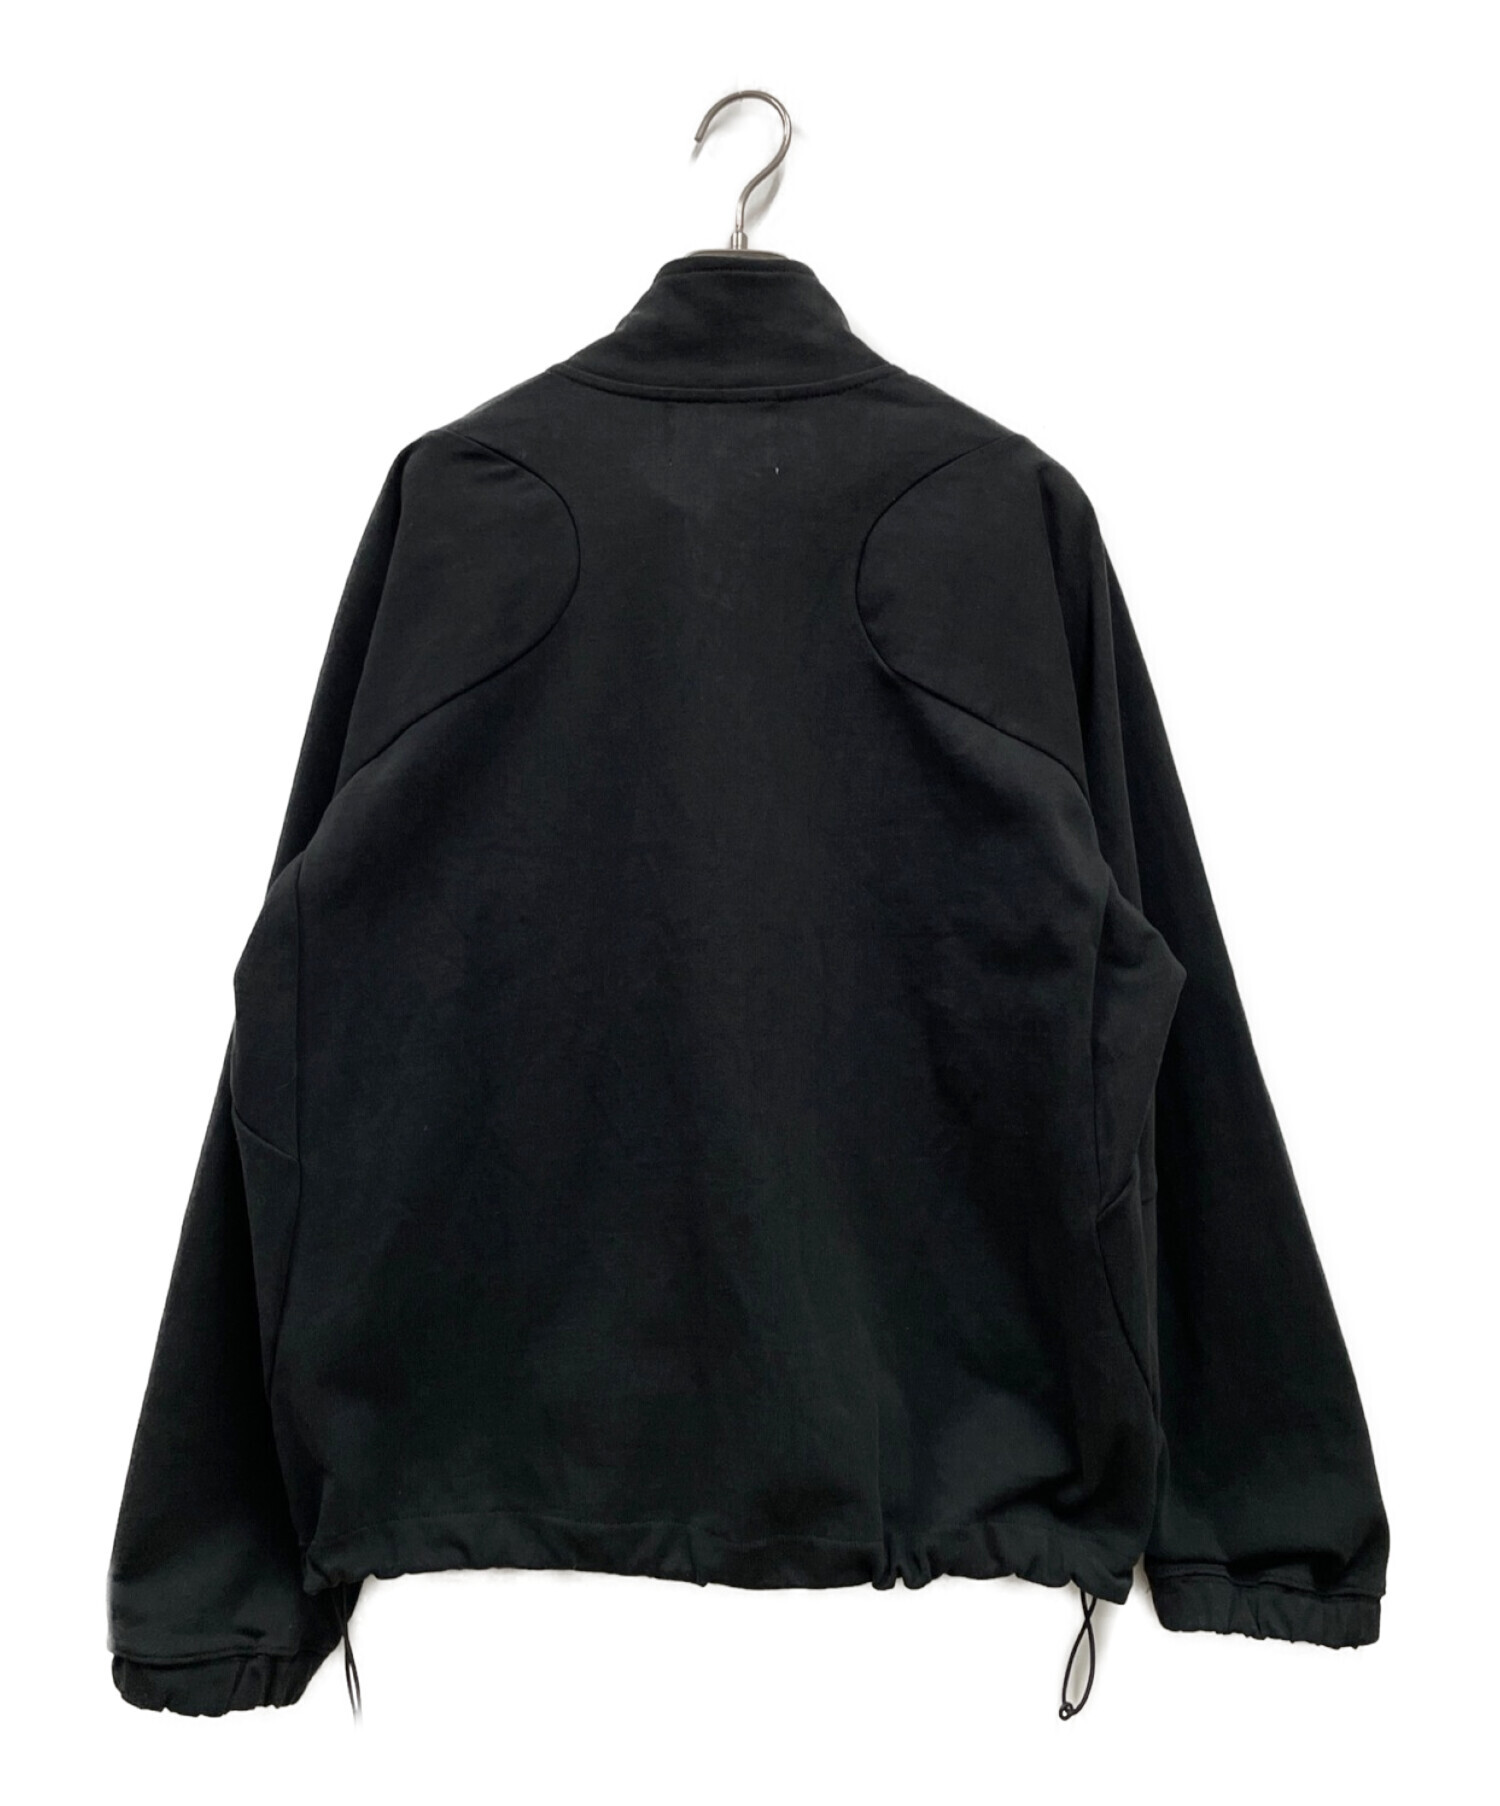 KAIKO (カイコー) KAIKO SAVE #1/KAIKO-23-0058/ジャケット ブラック サイズ:1